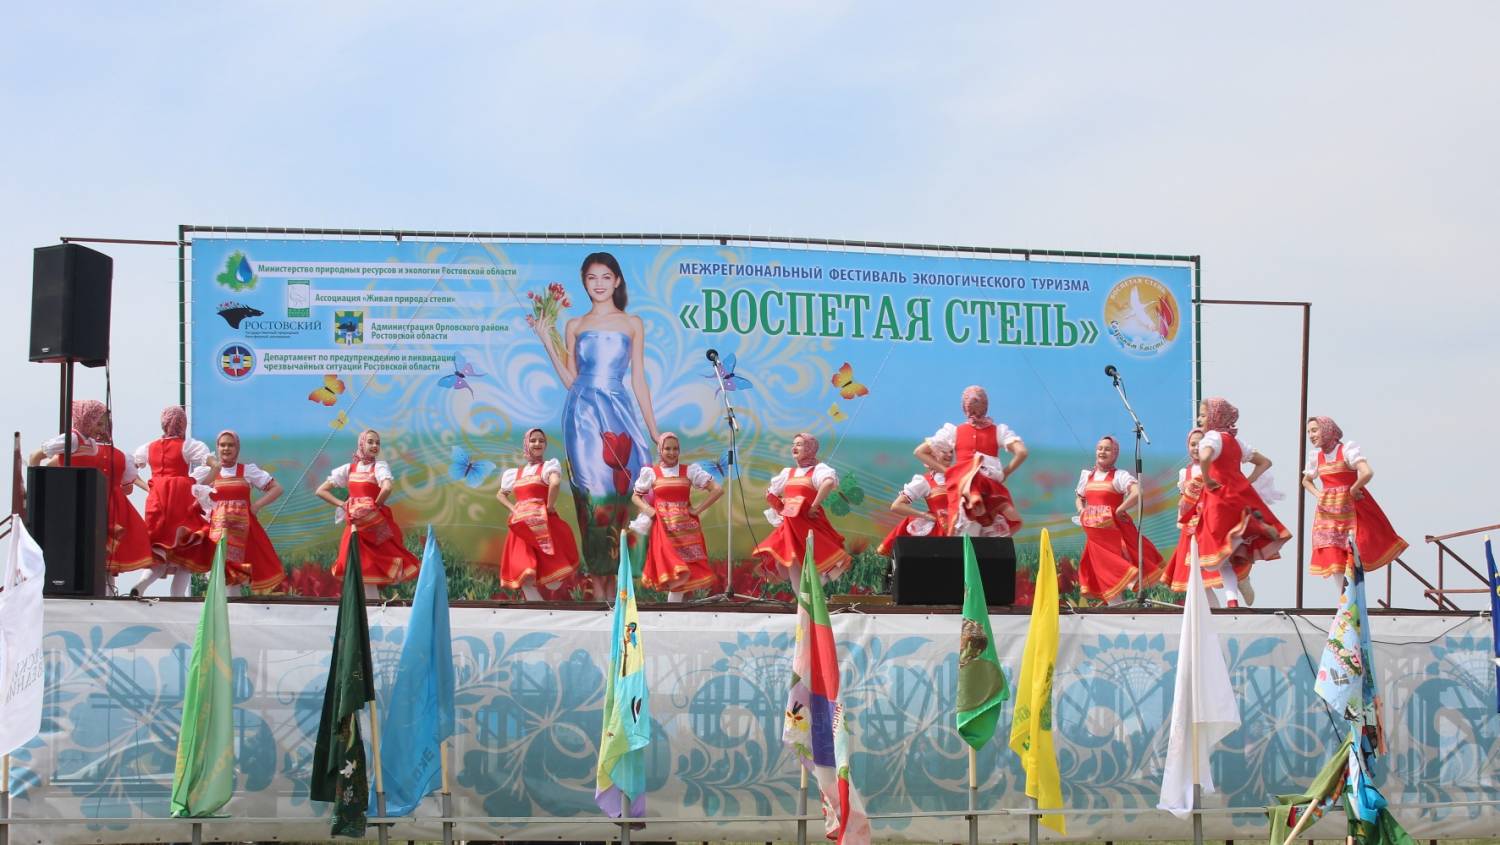 Фестиваль воспетая степь Ростовская область